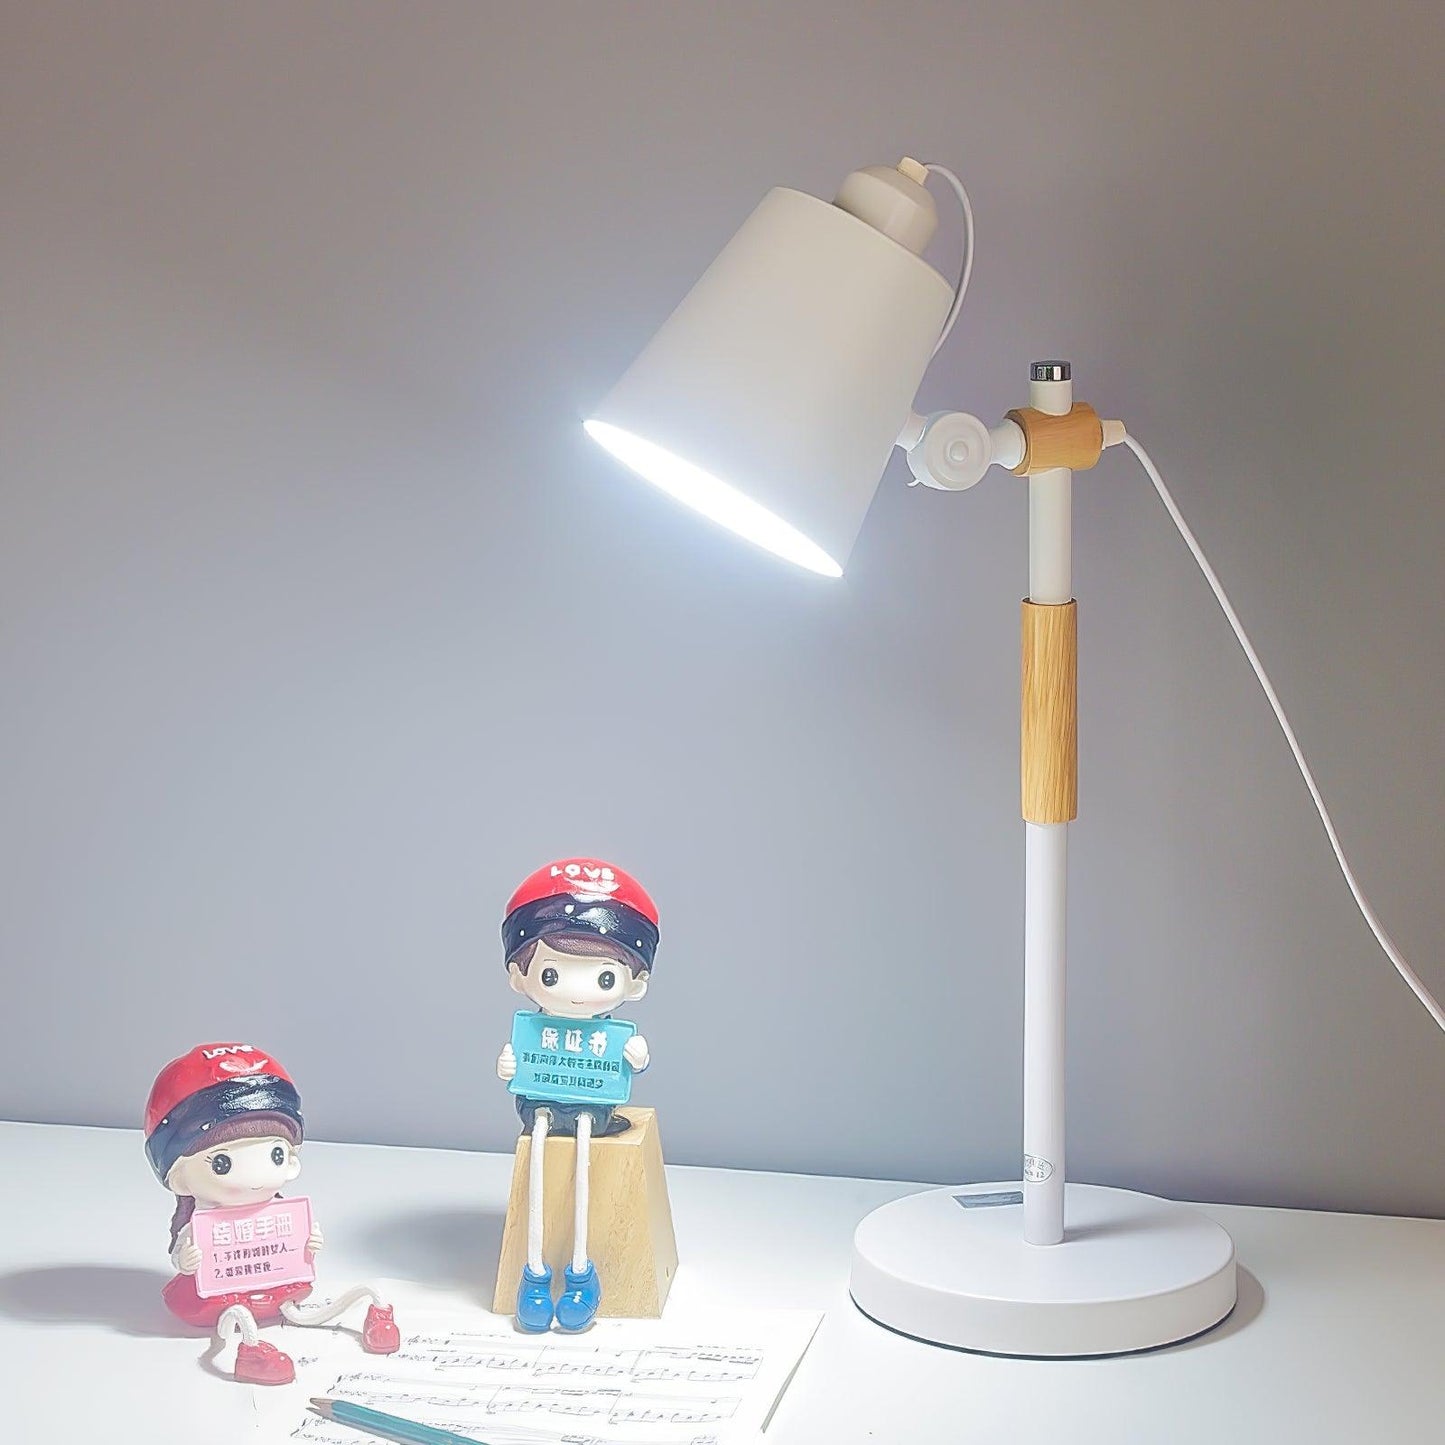 Scantling Desk Lamp